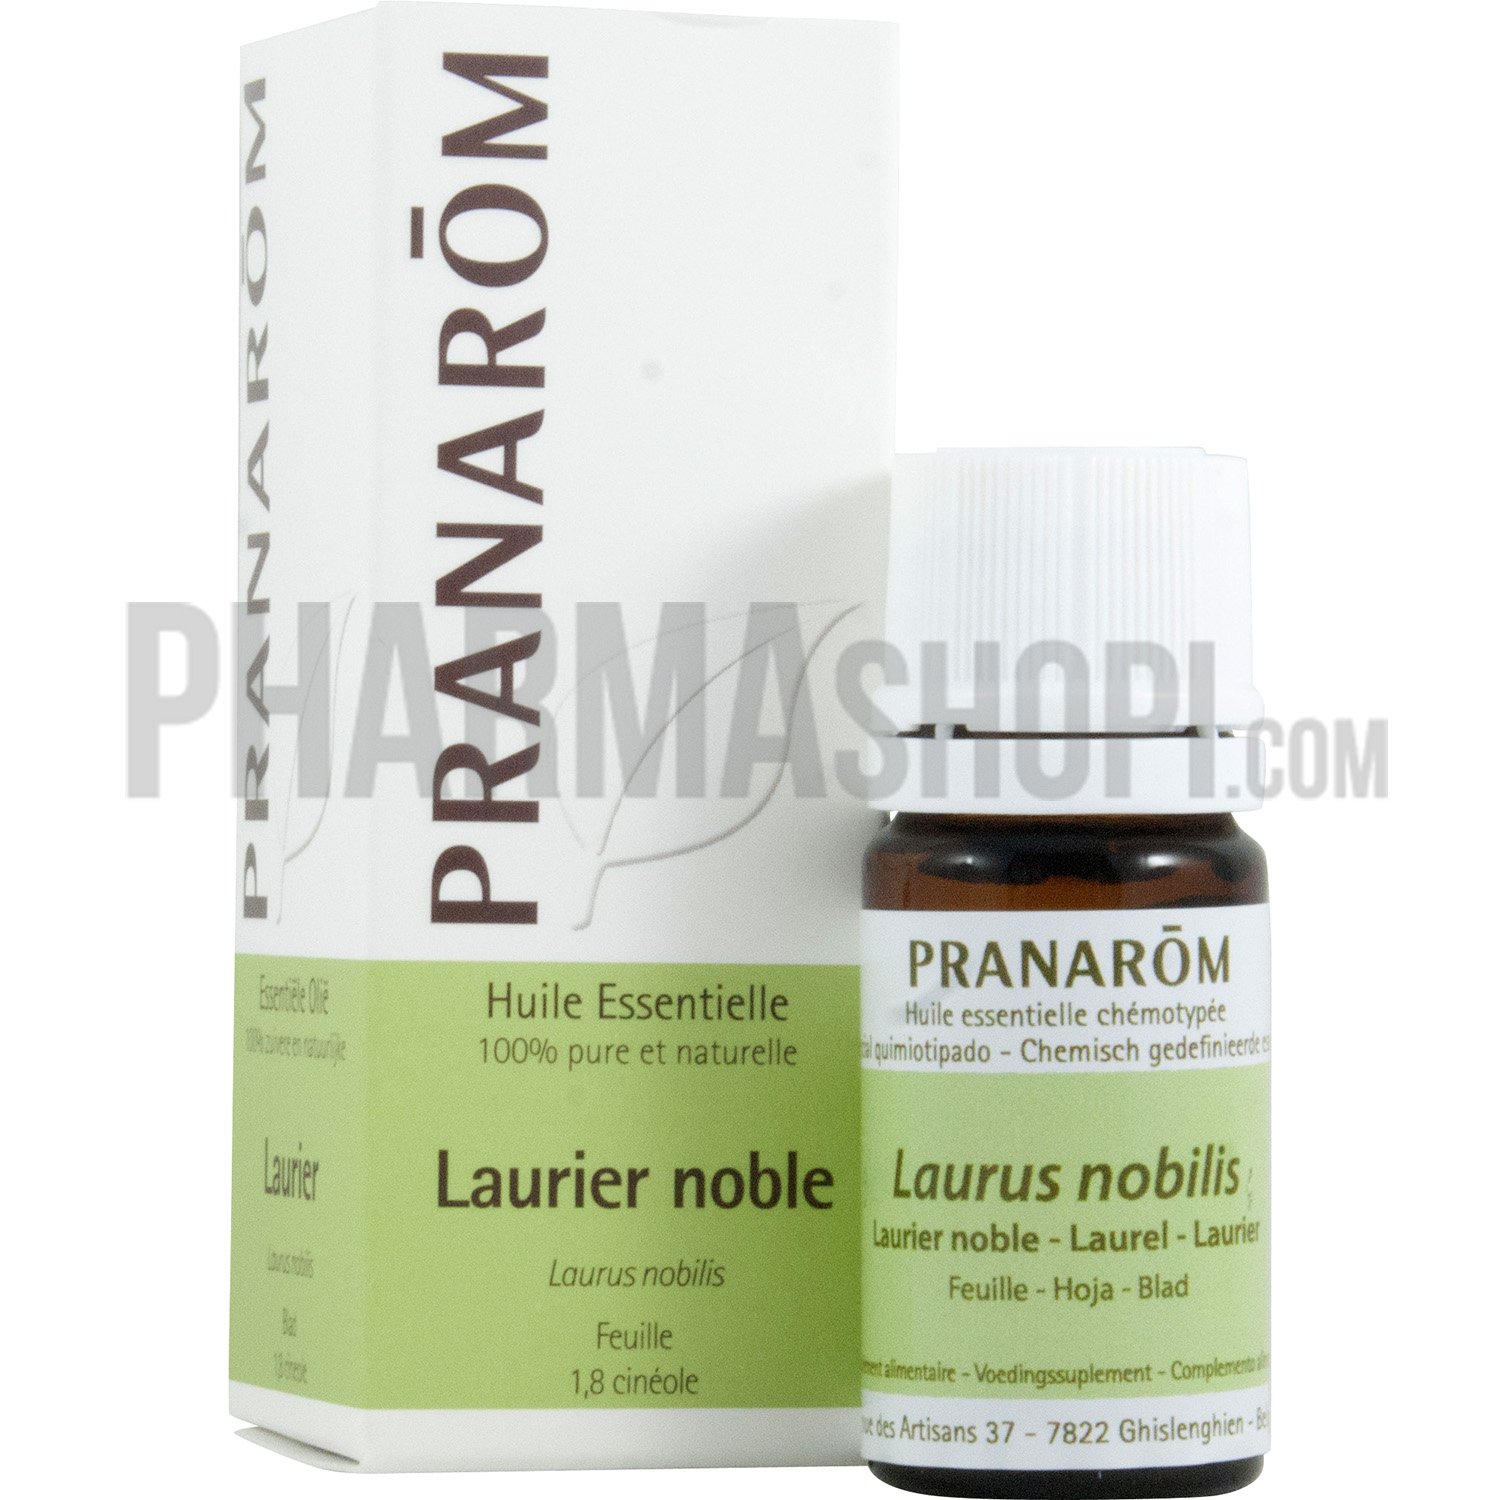 Huile essentielle de Laurier noble Pranarôm - flacon de 5 ml